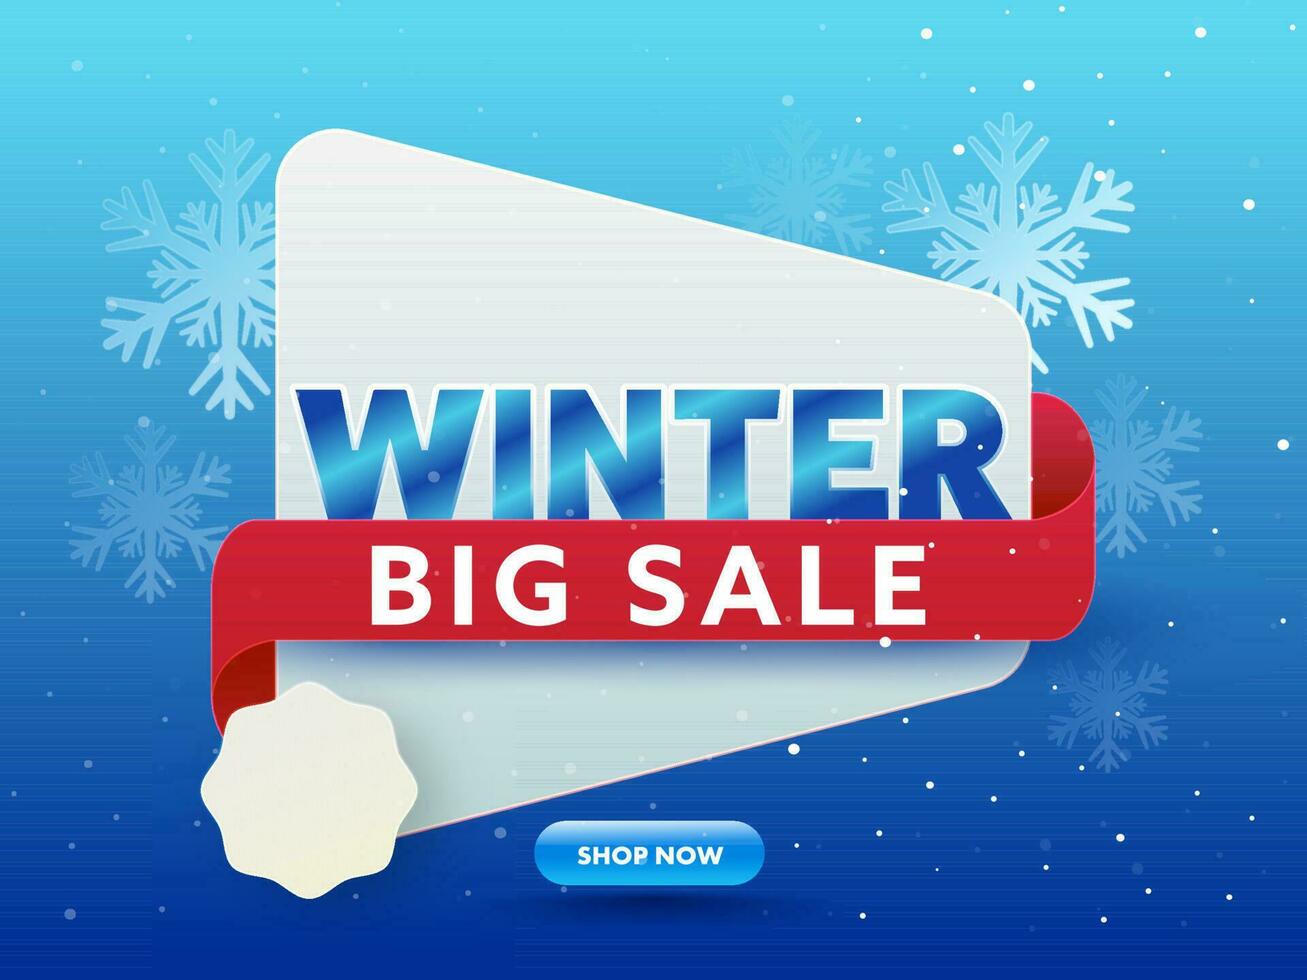 Winter groß Verkauf Poster Design mit leeren Etikette und Schneeflocken auf Blau Hintergrund. vektor